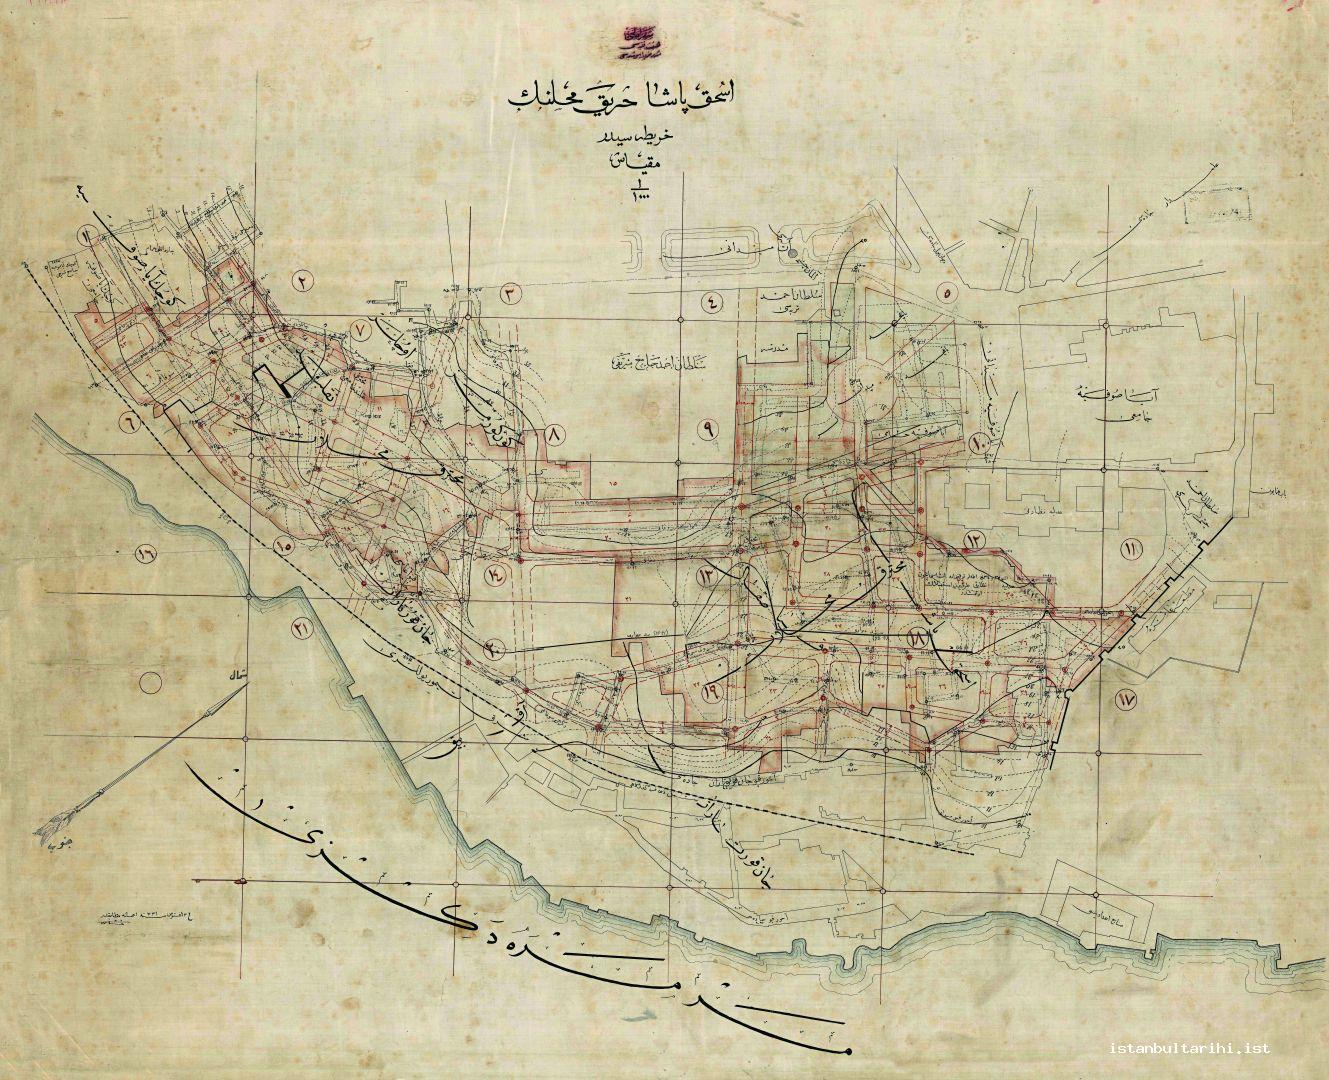 12- 16 Ağustos 1915 tarihli İshak Paşa yangın bölgesi haritası (İBB, Atatürk Kitaplığı)